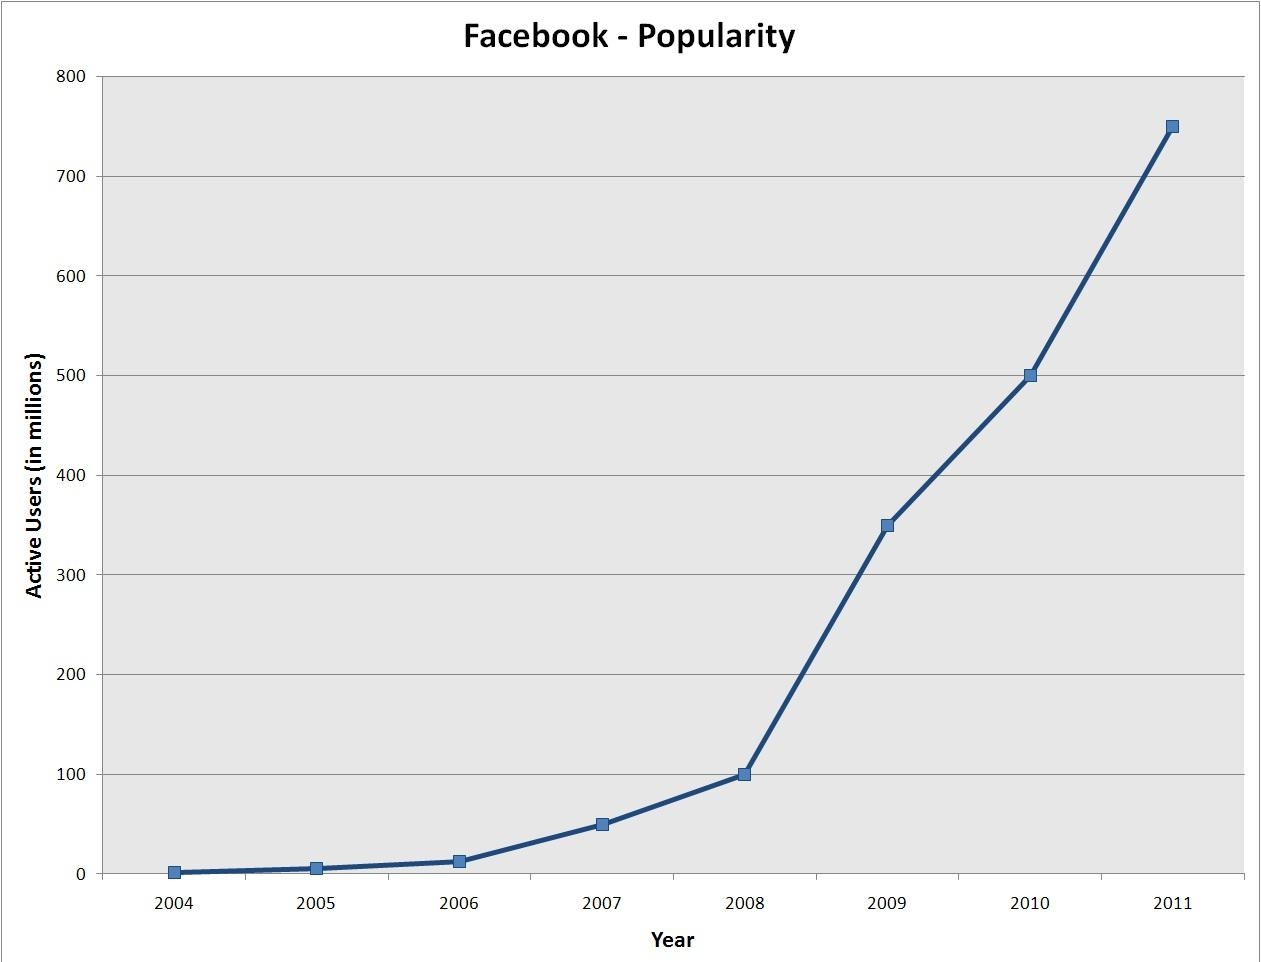 4. Facebook популярность. Активных пользователей Facebook возросло с миллиона в 2004 году до более чем 750 млн в 2011 году.